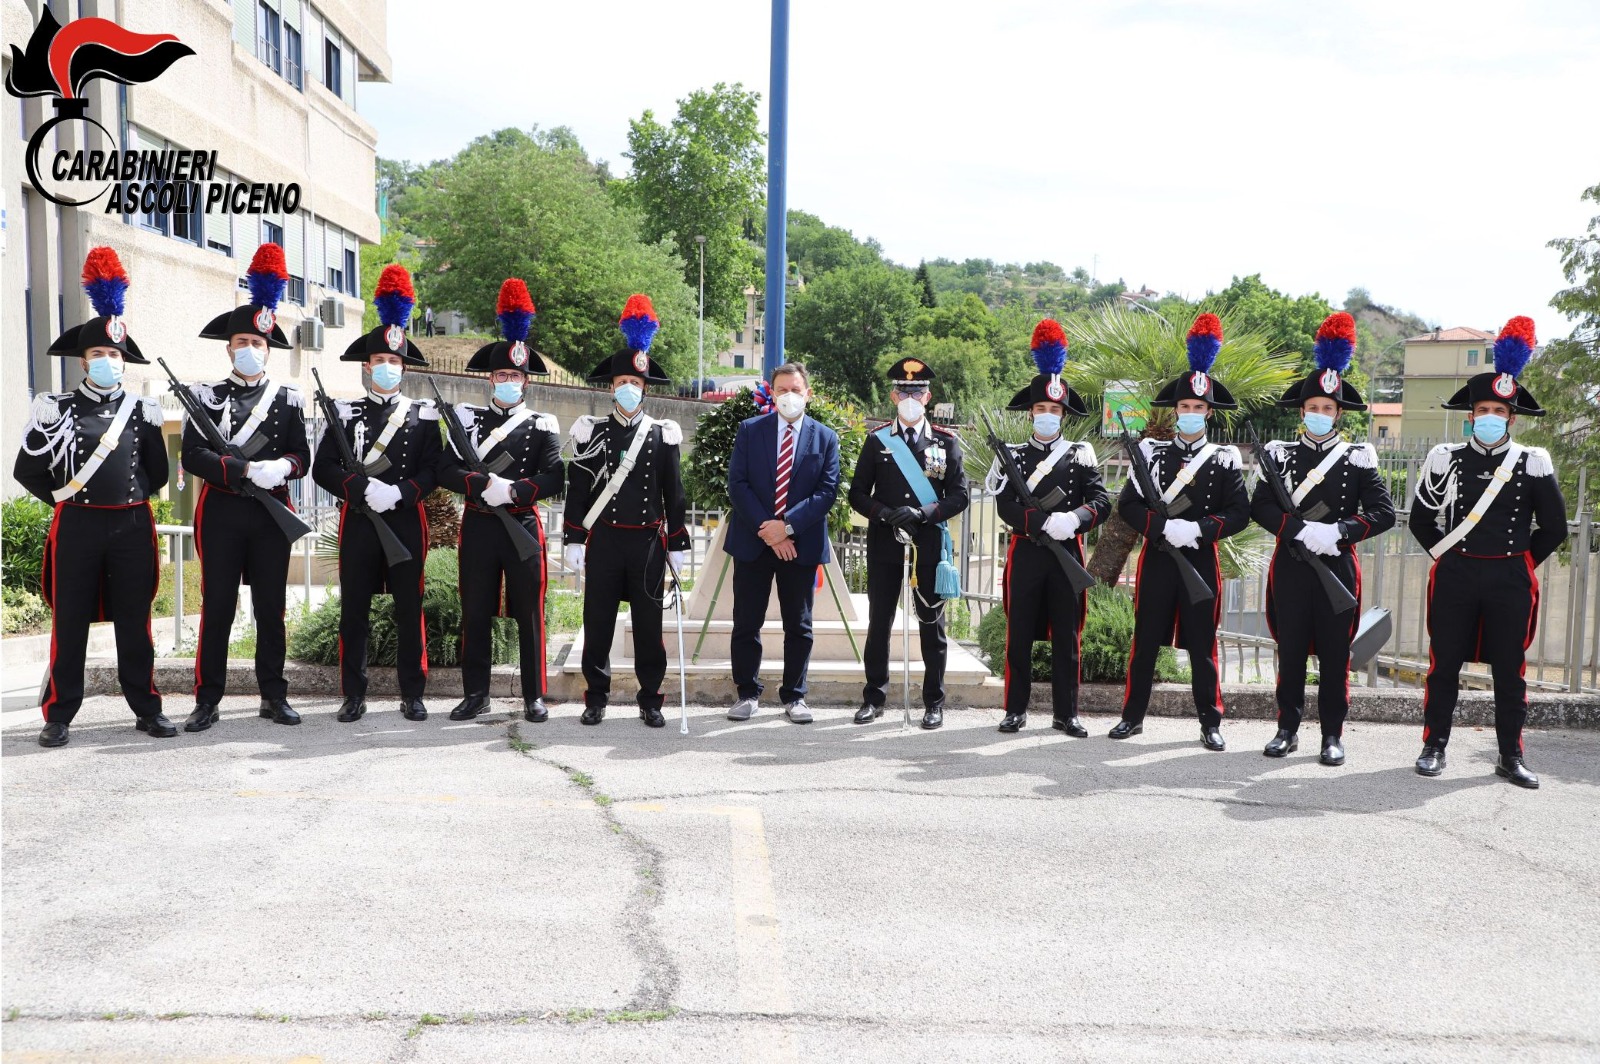 Ascoli – Cerimonia solenne per i 207 anni dell’Arma dei Carabinieri